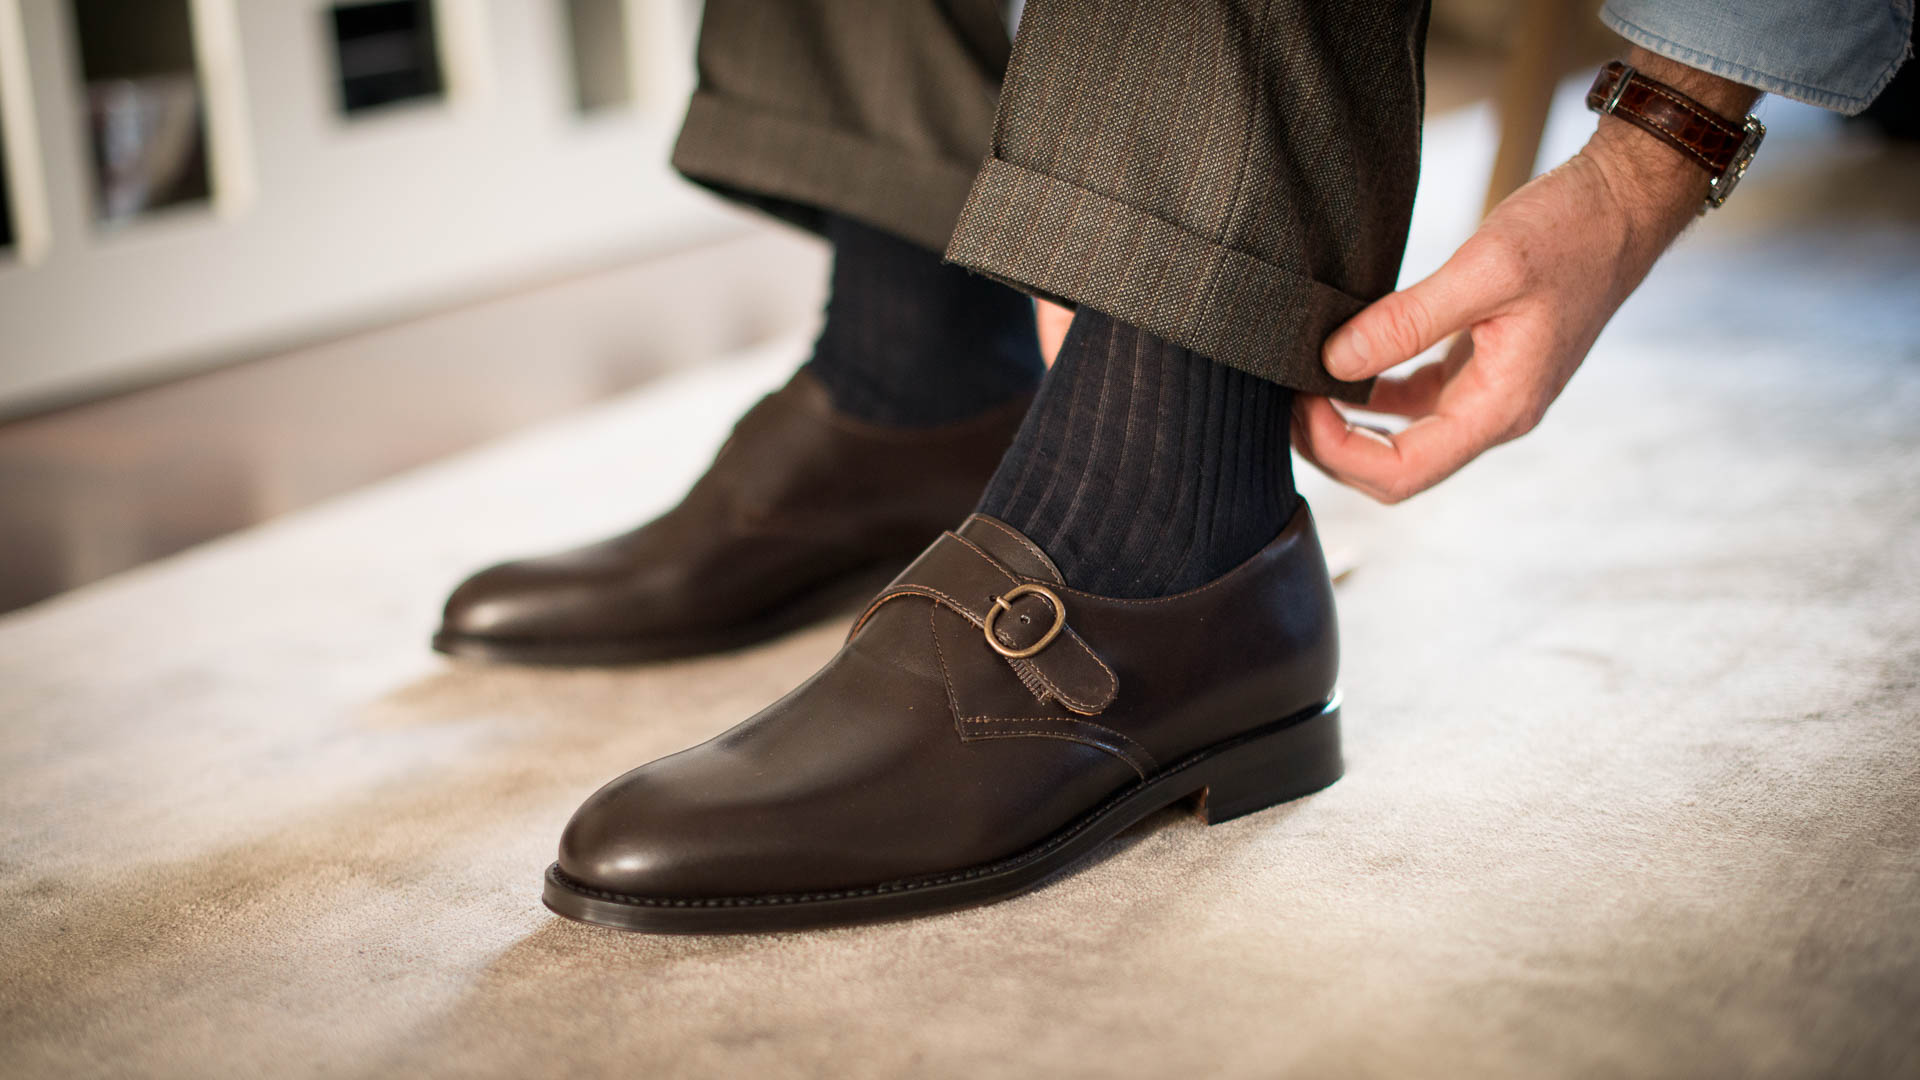 Men's classic black leather Single Monk Strap shoes | Velasca